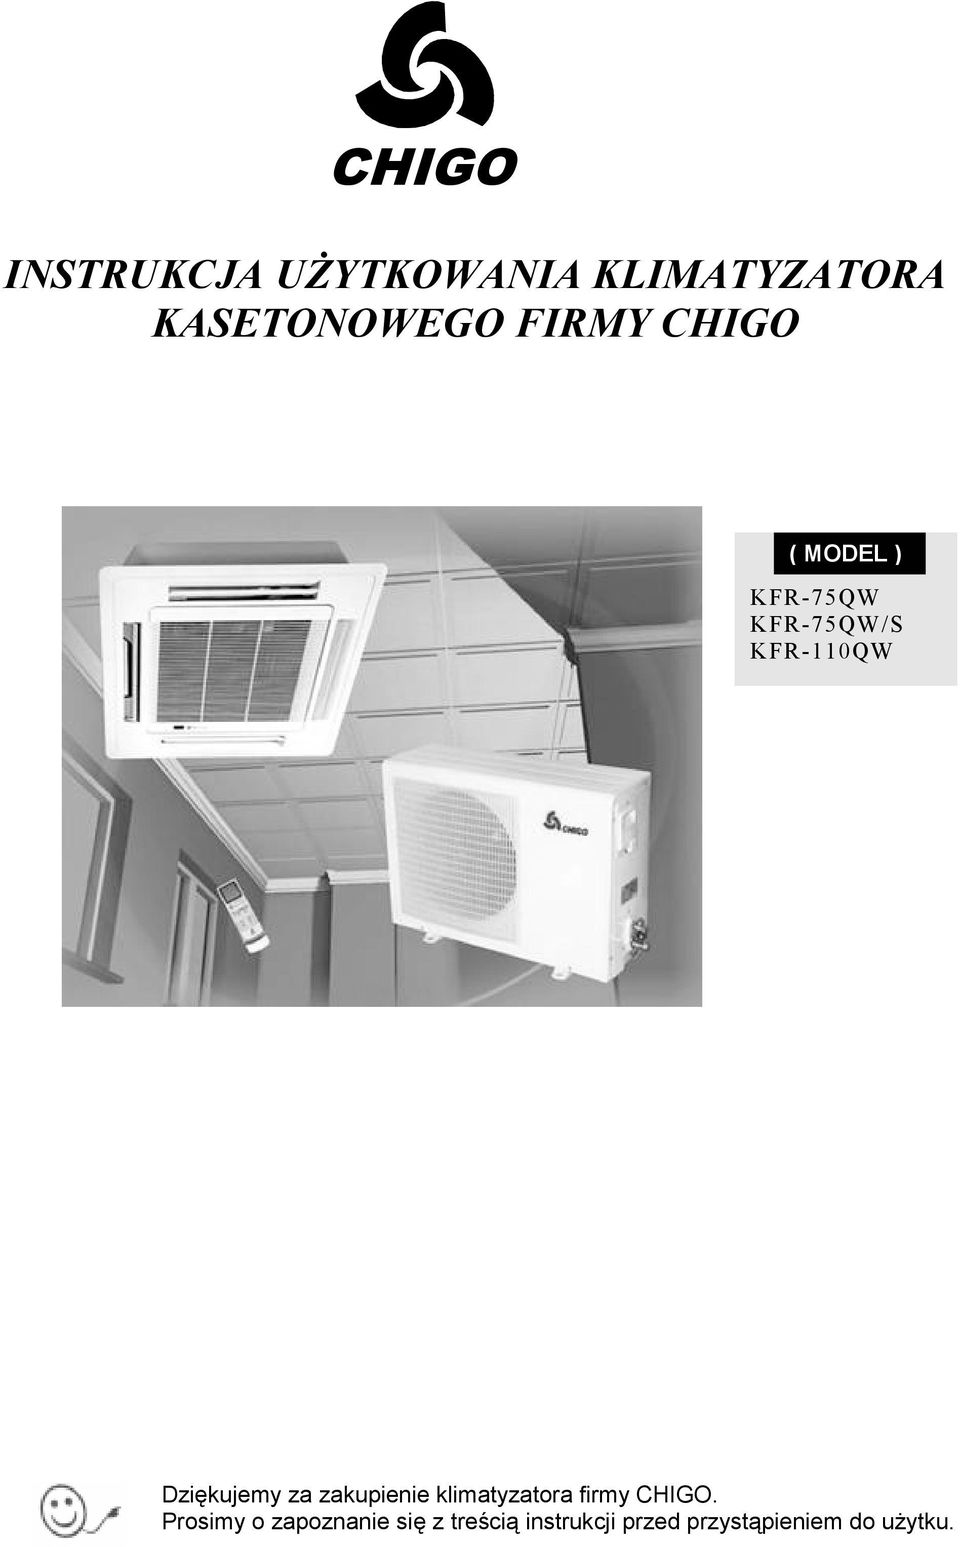 Dziękujemy za zakupienie klimatyzatora firmy CHIGO.